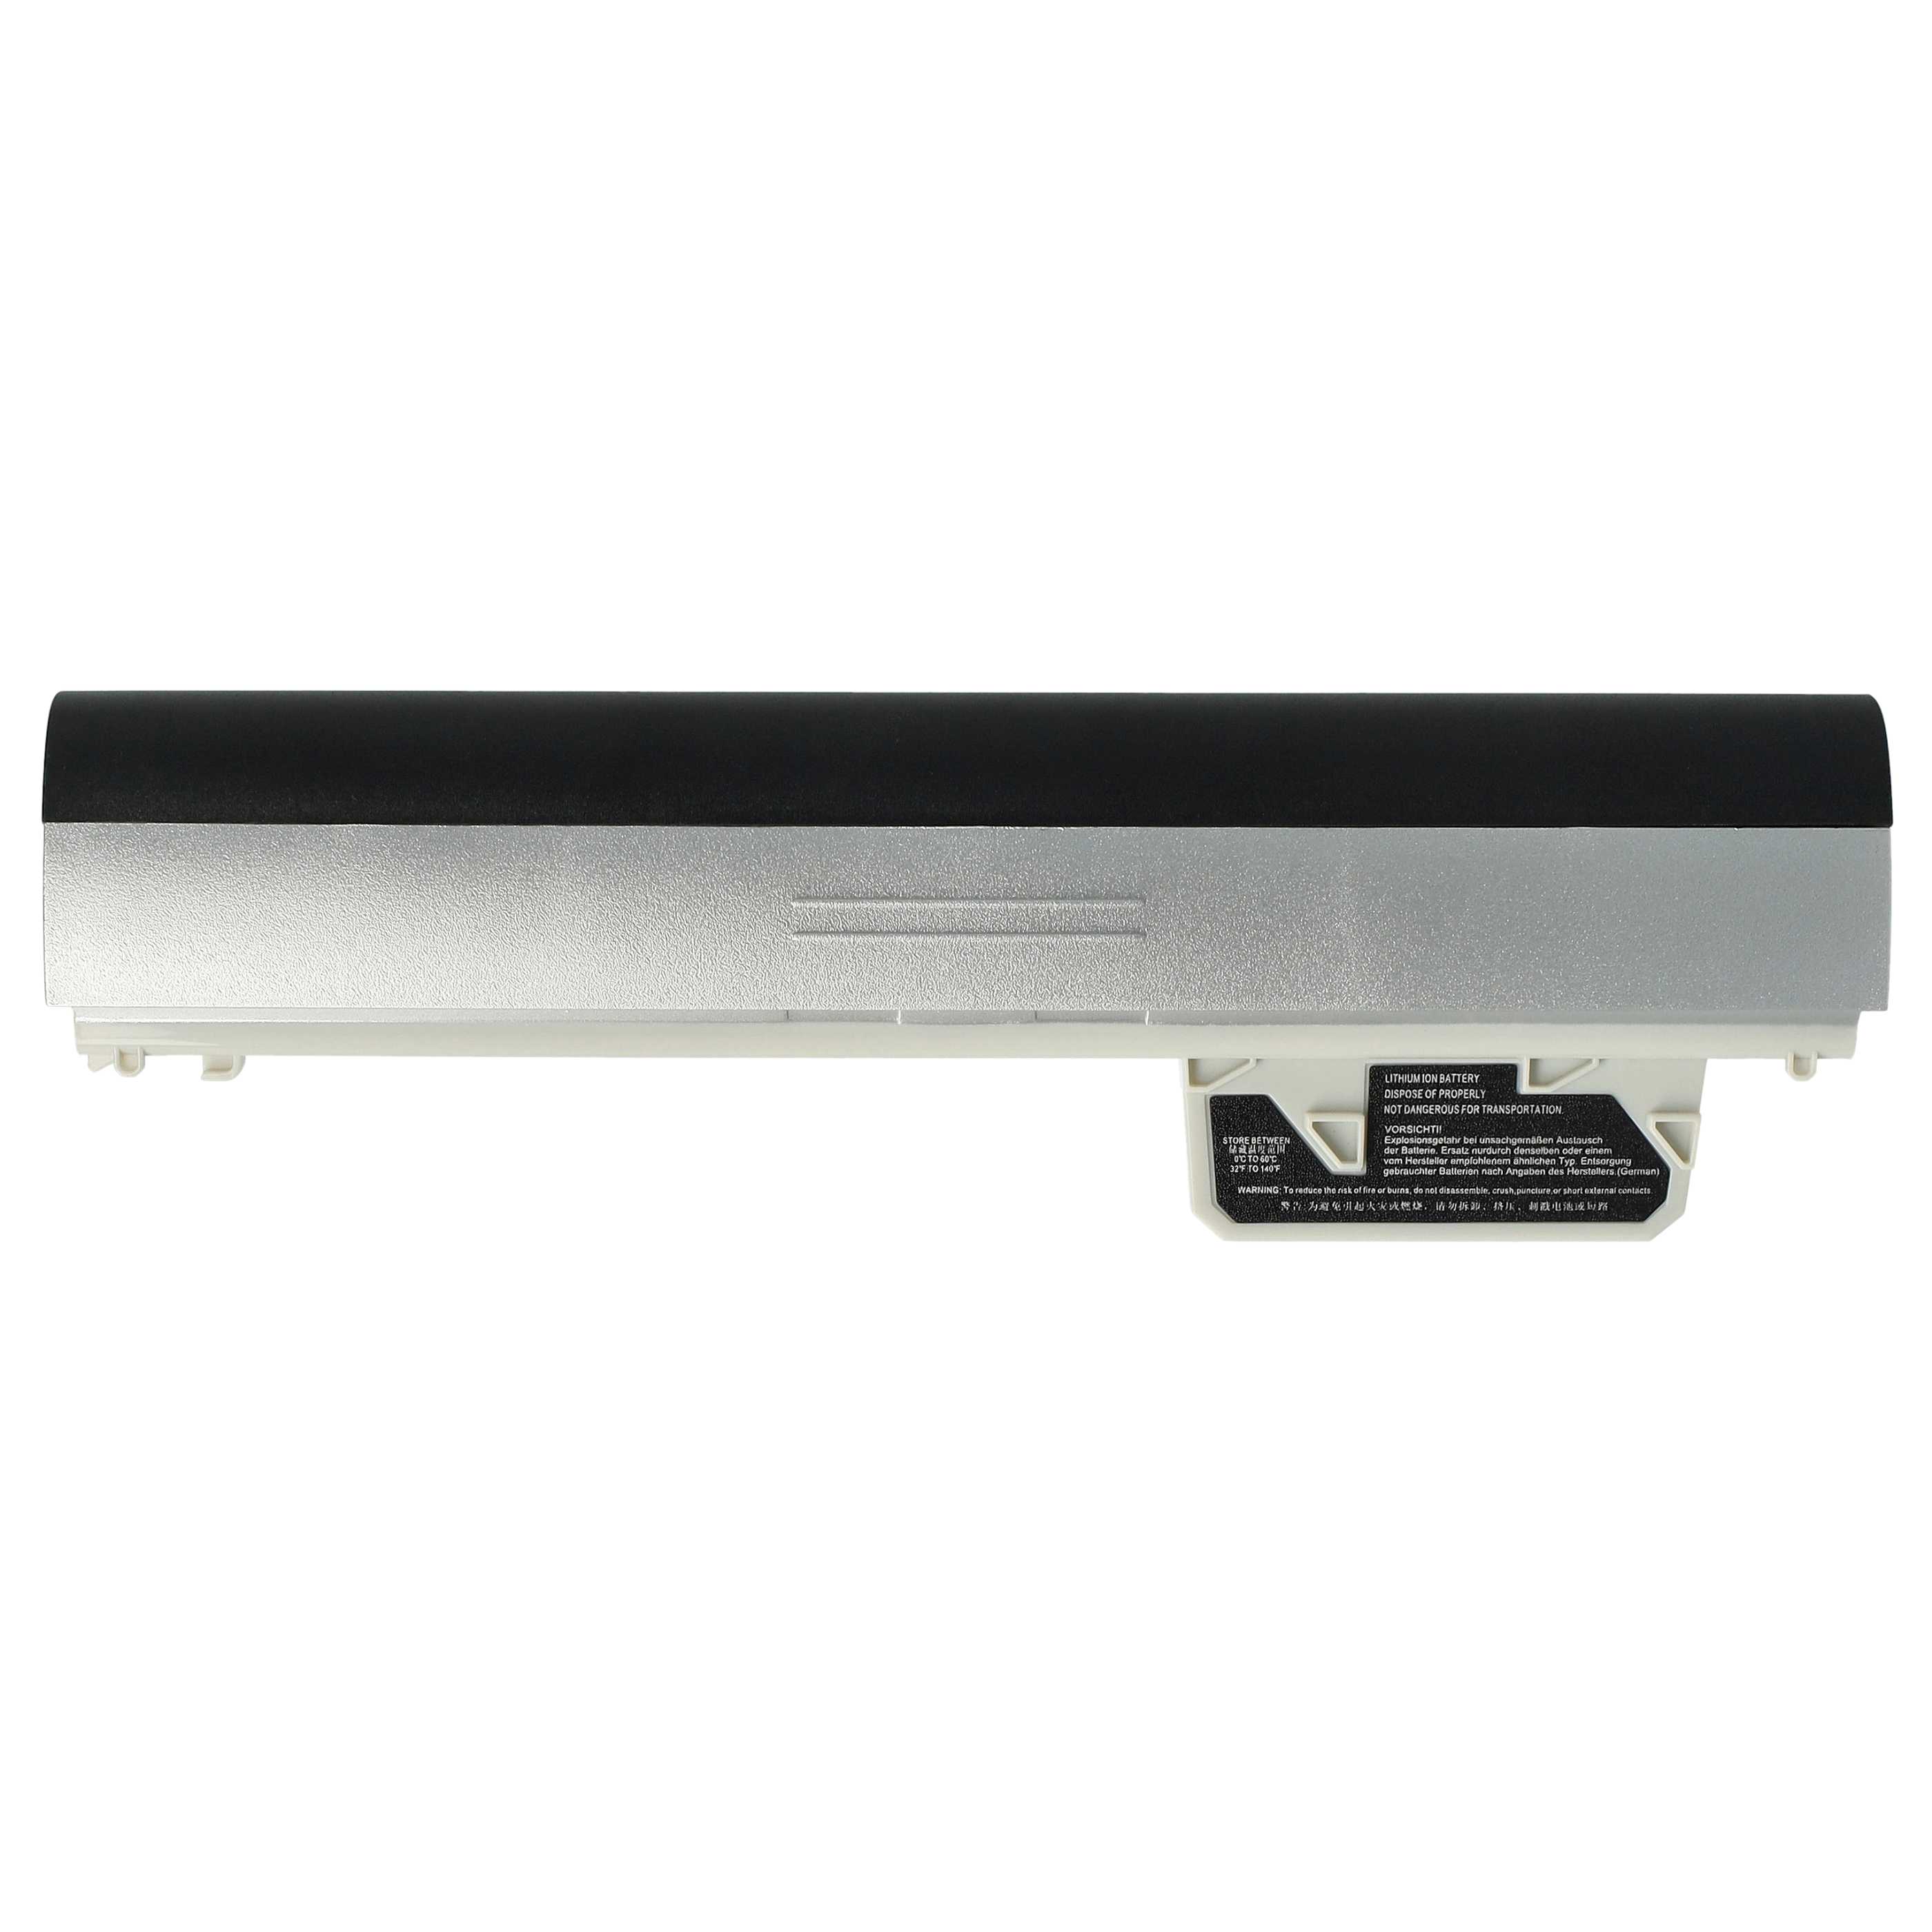 Batterie remplace HP 626869-851, 626869-321 pour ordinateur portable - 4400mAh 11,1V Li-ion, gris argenté